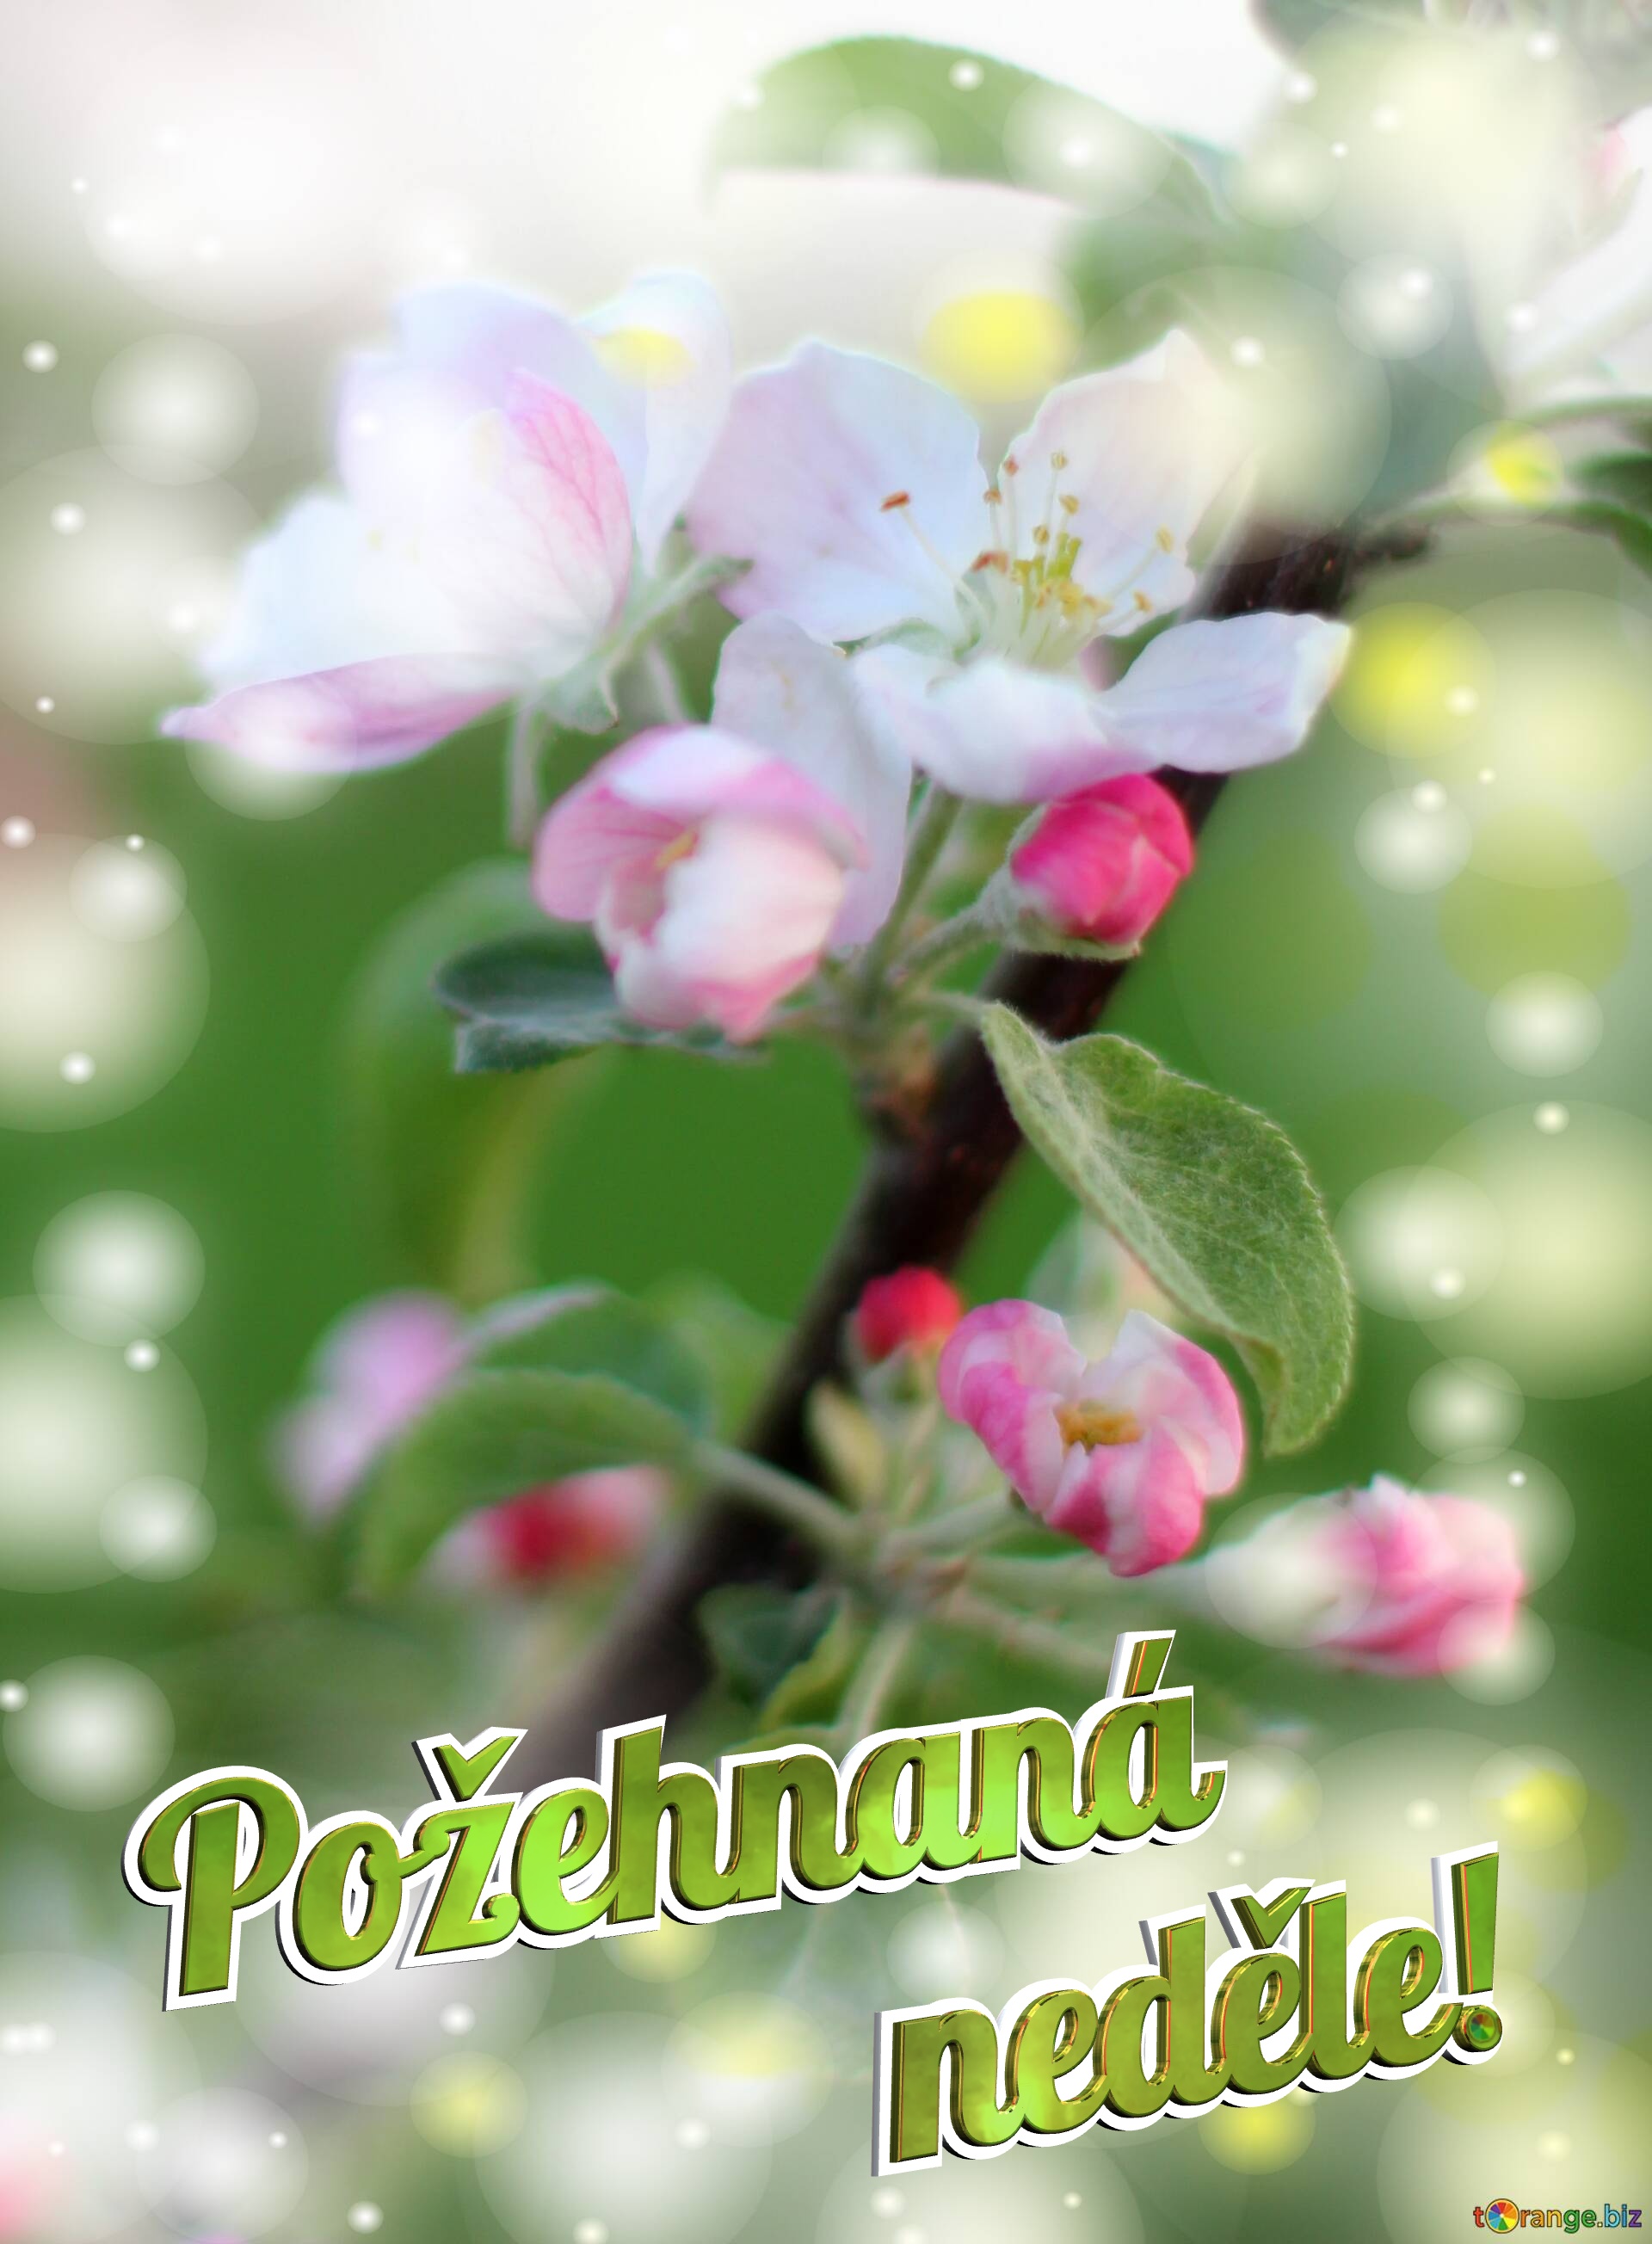 Požehnaná neděle! Flowers of the Apple-tree background №0